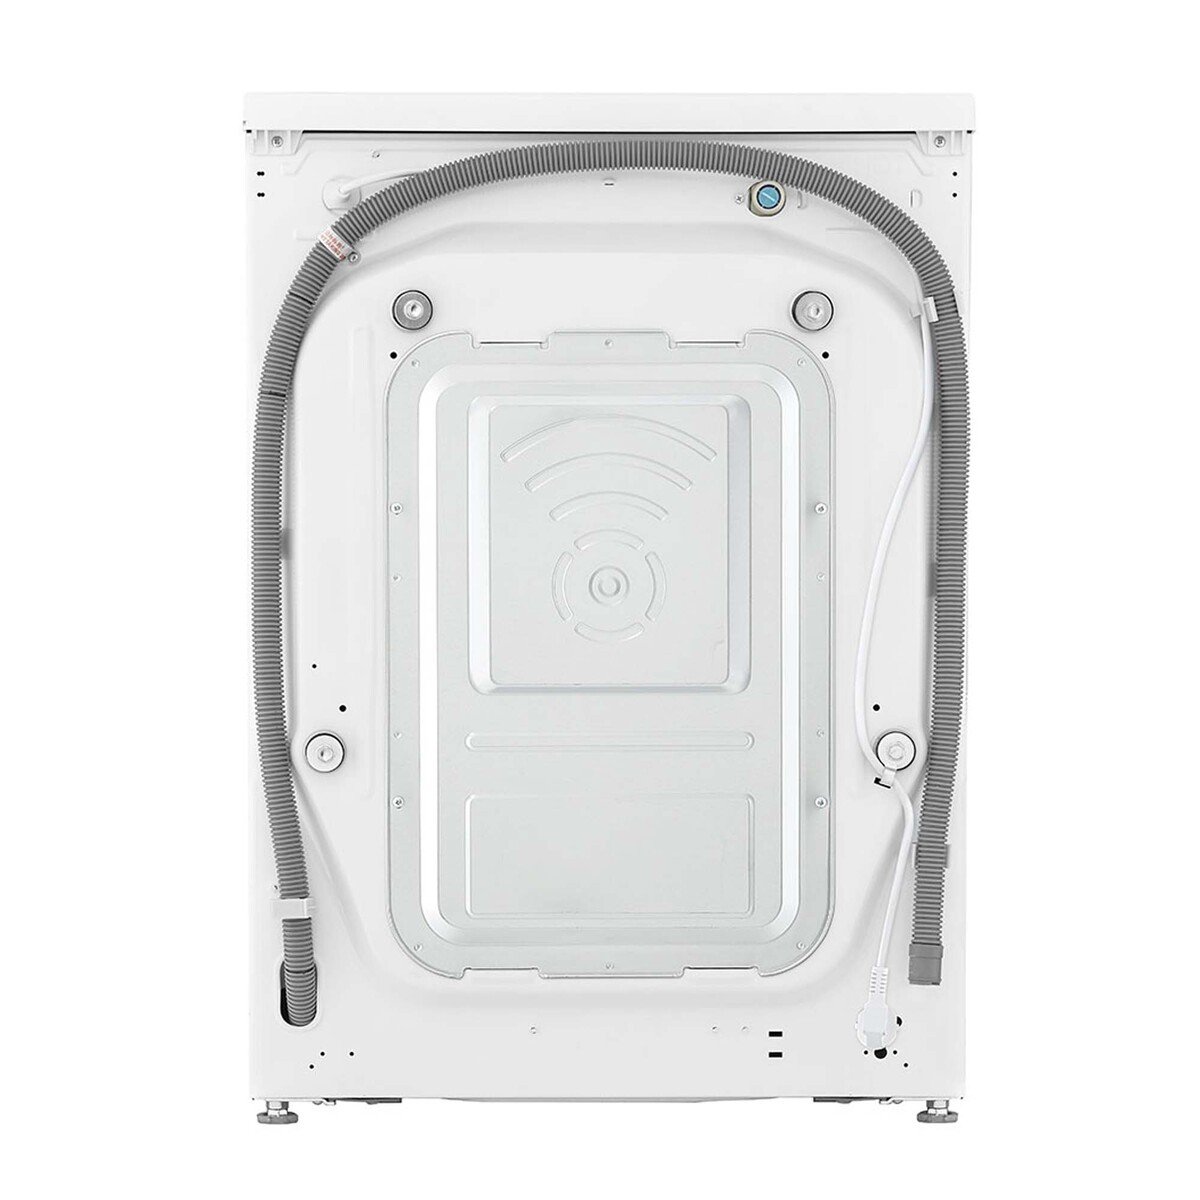 LG Front Load Washing Machine F2V5GYP0W 8.5KG, AI DD™, Steam+™, Bigger Capacity